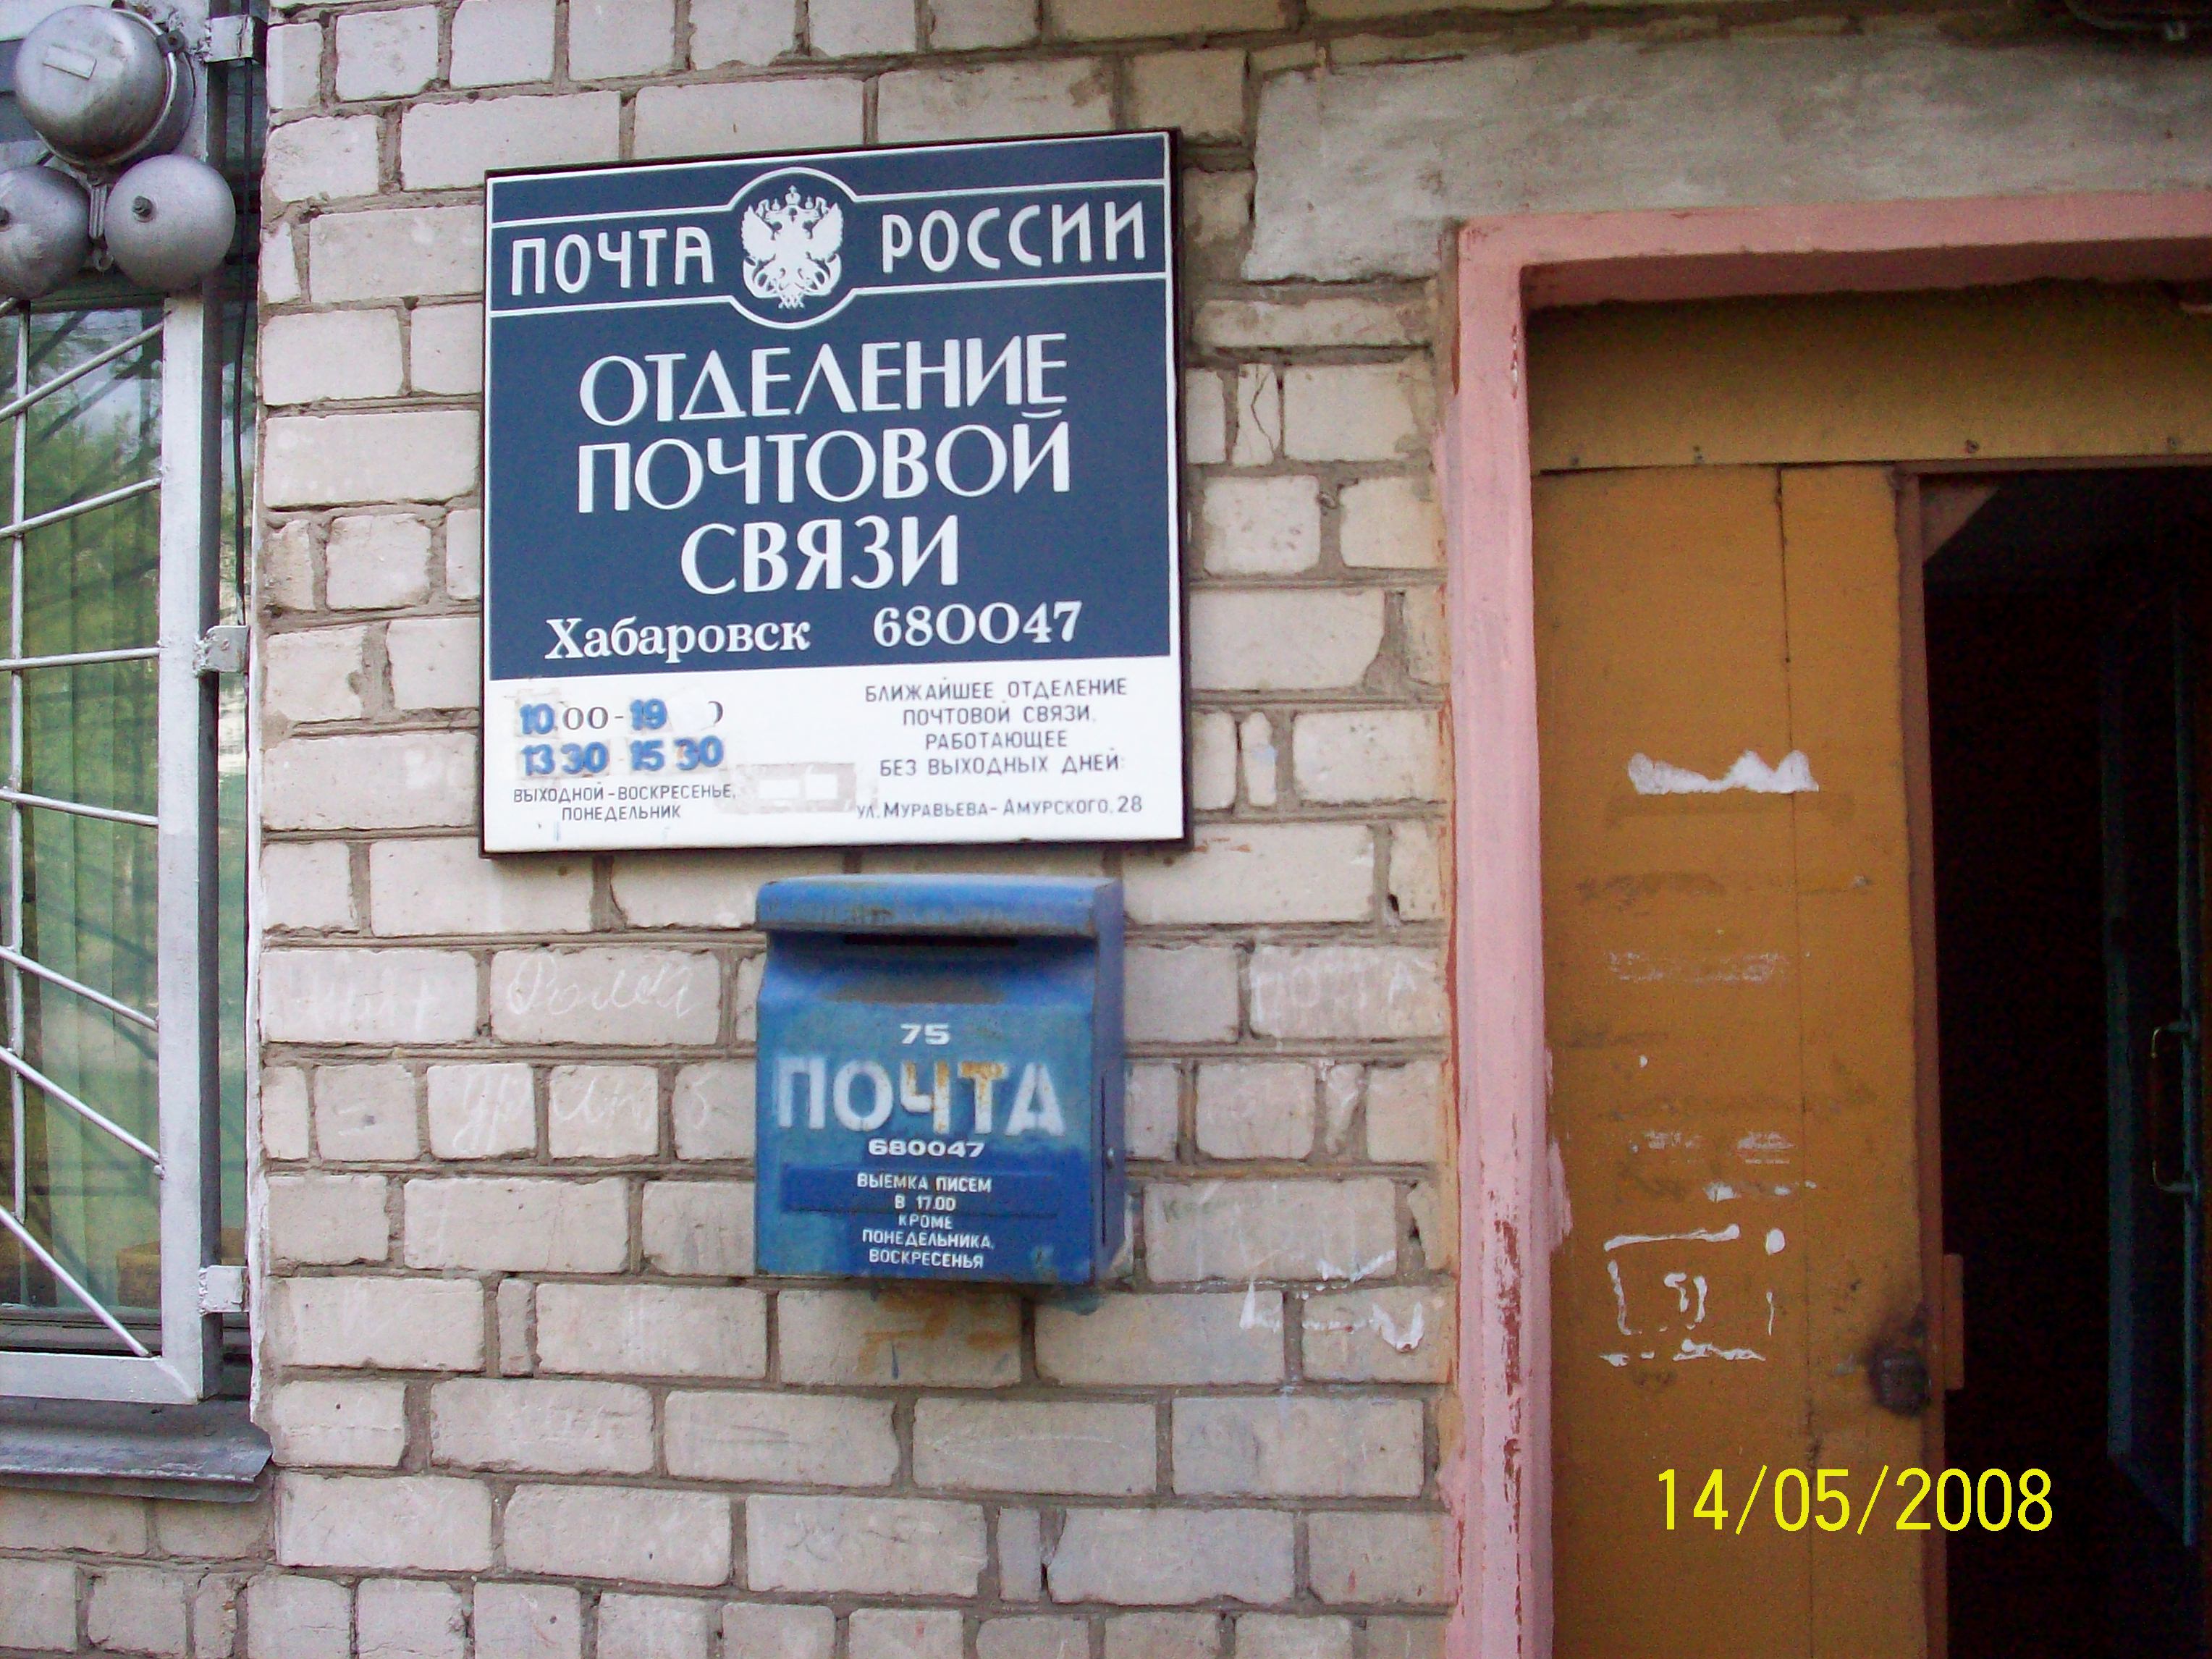 ФАСАД, отделение почтовой связи 680047, Хабаровский край, Хабаровск